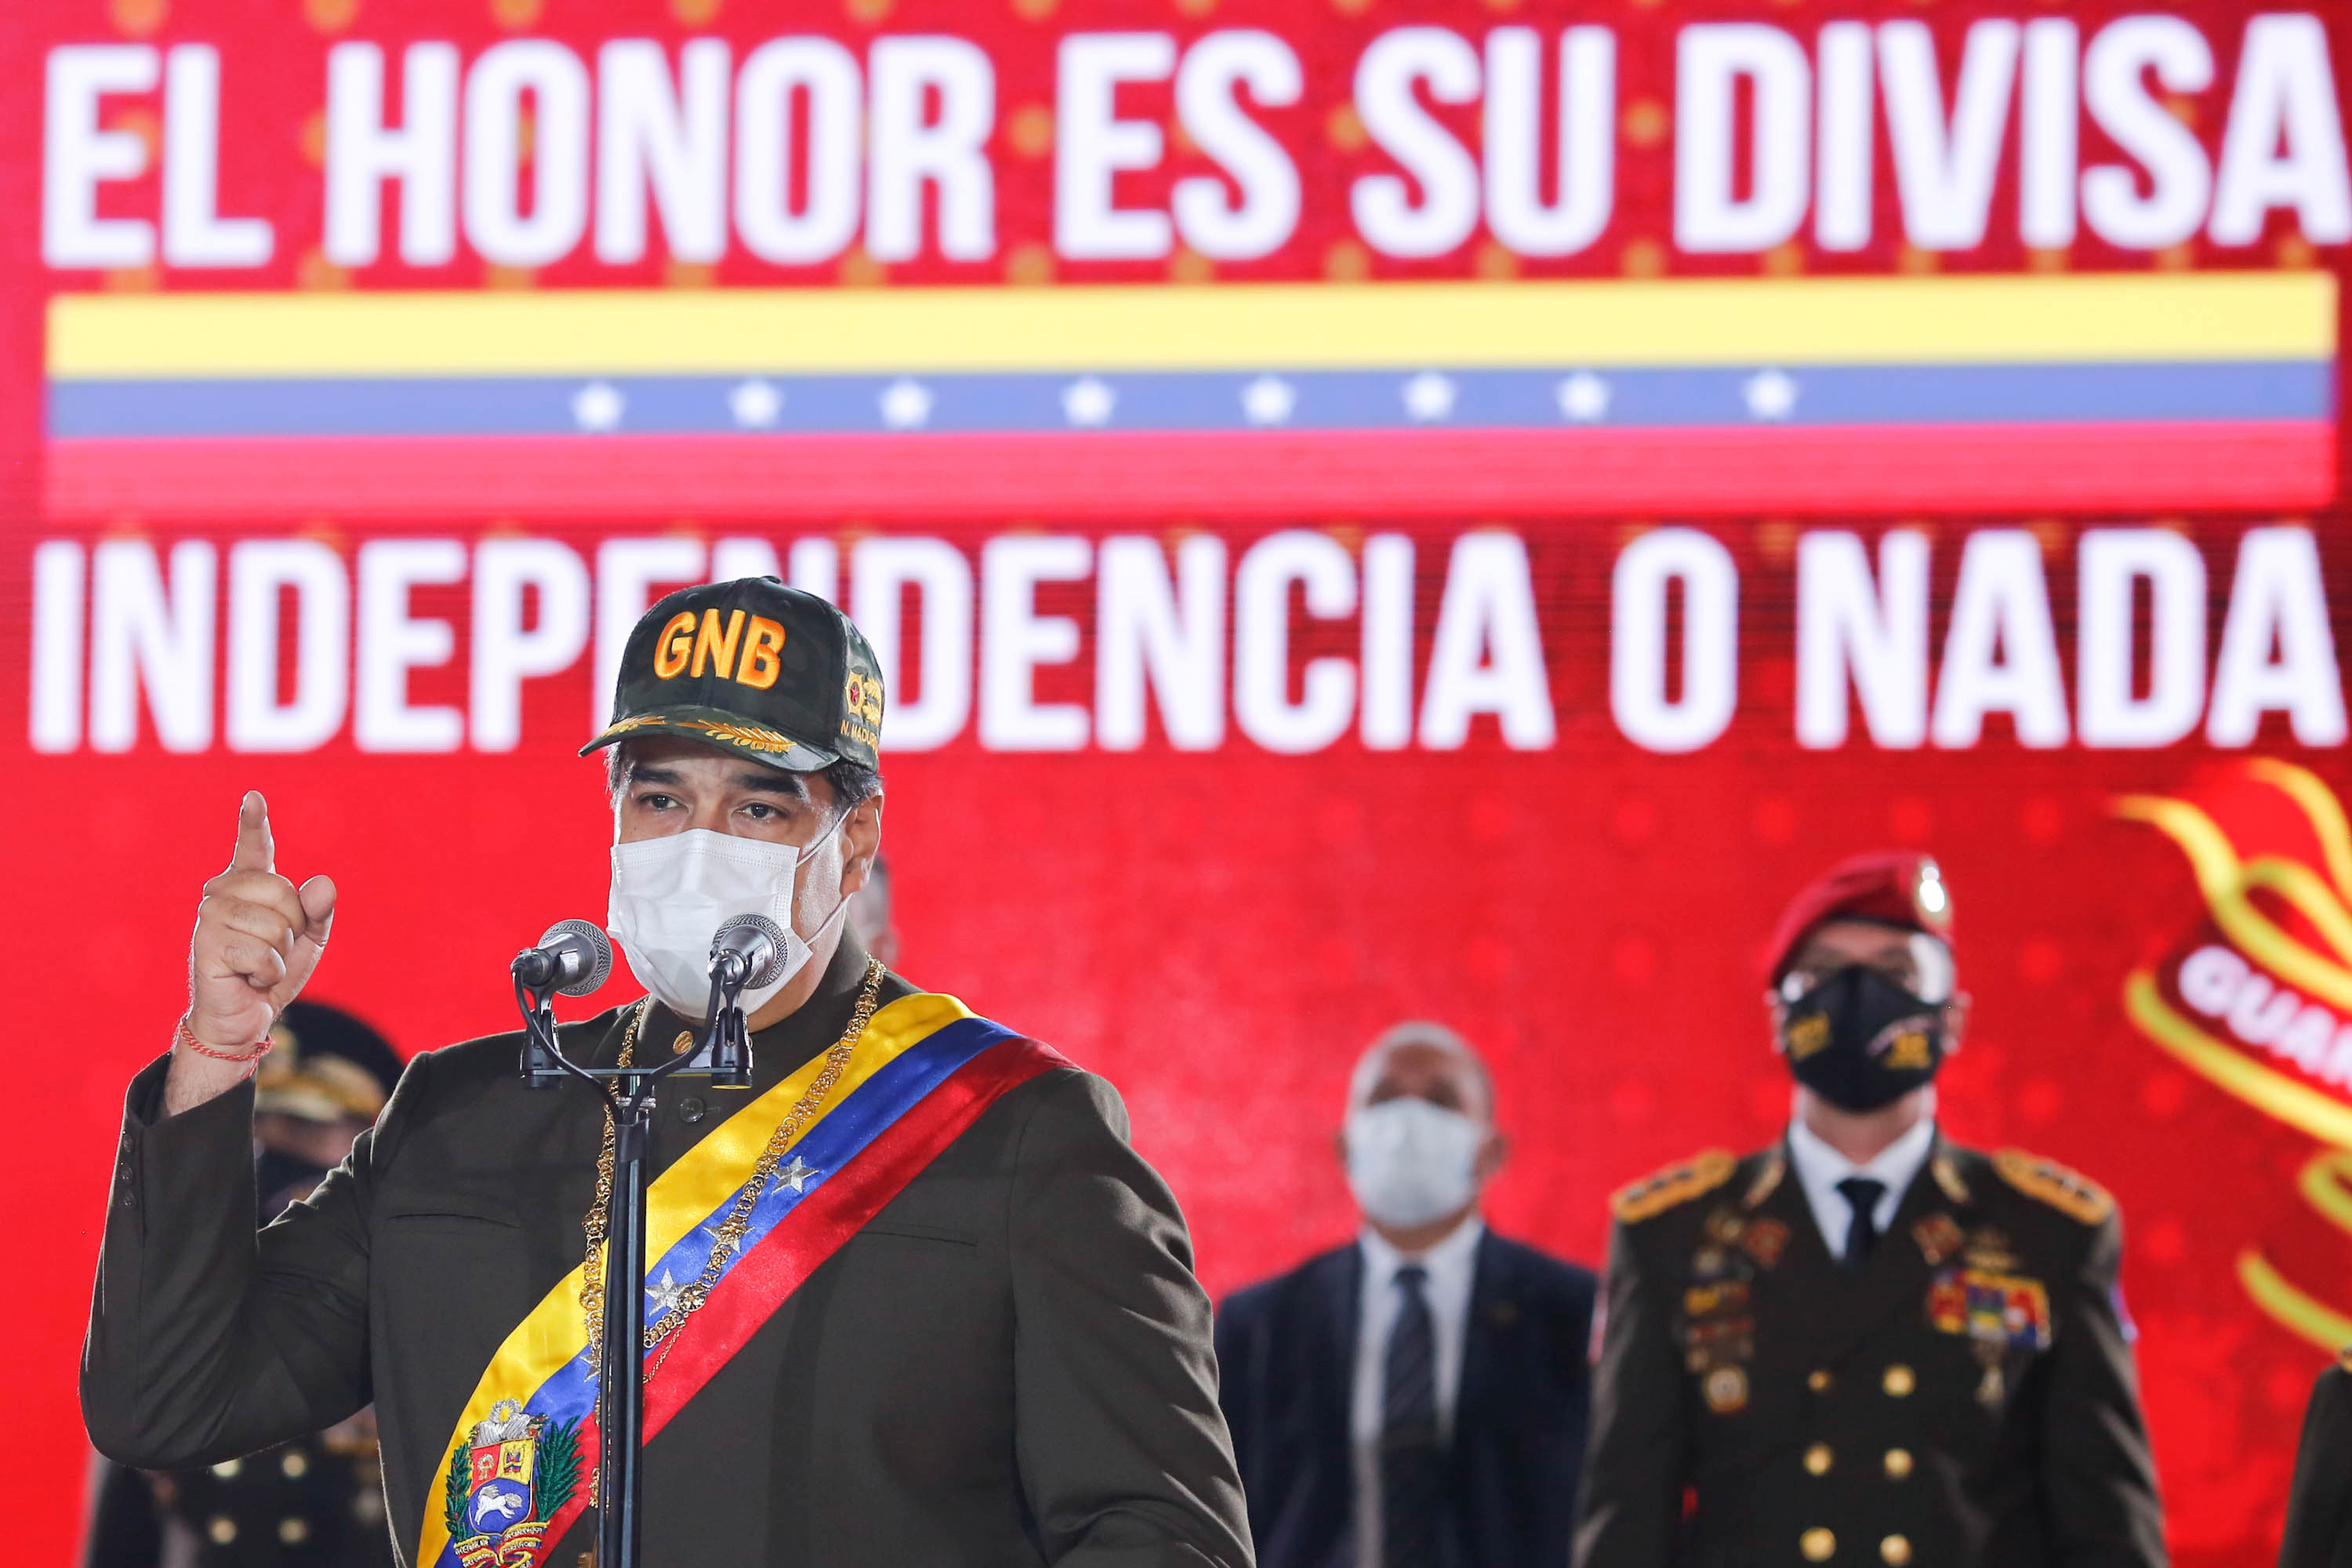 Nicolás Maduro en una ceremonia de la Guardia Nacional Bolivariana en Caracas el 4 de agosto de 2020 (Miraflores Palace/Handout via REUTERS)